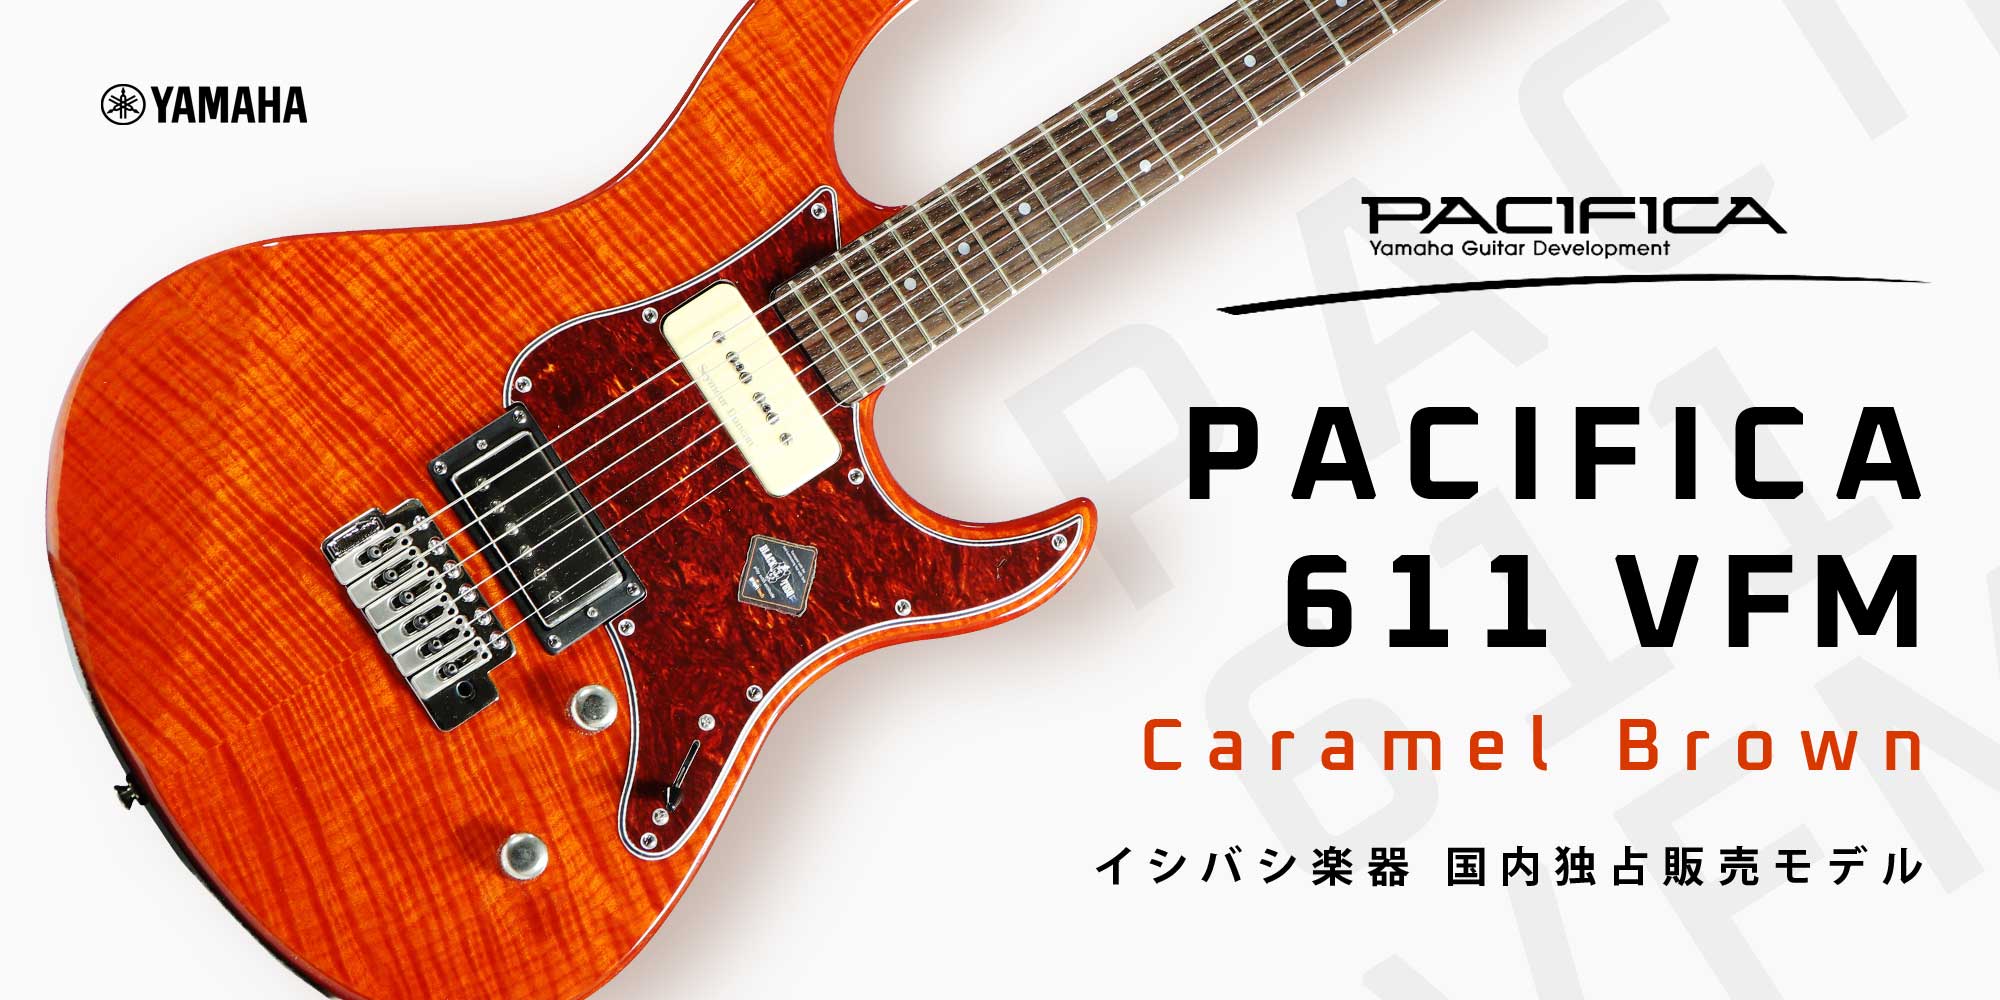 Yamaha PACIFICA 611 VFM Caramel Brown イシバシ楽器 国内独占販売モデル【イシバシ楽器】